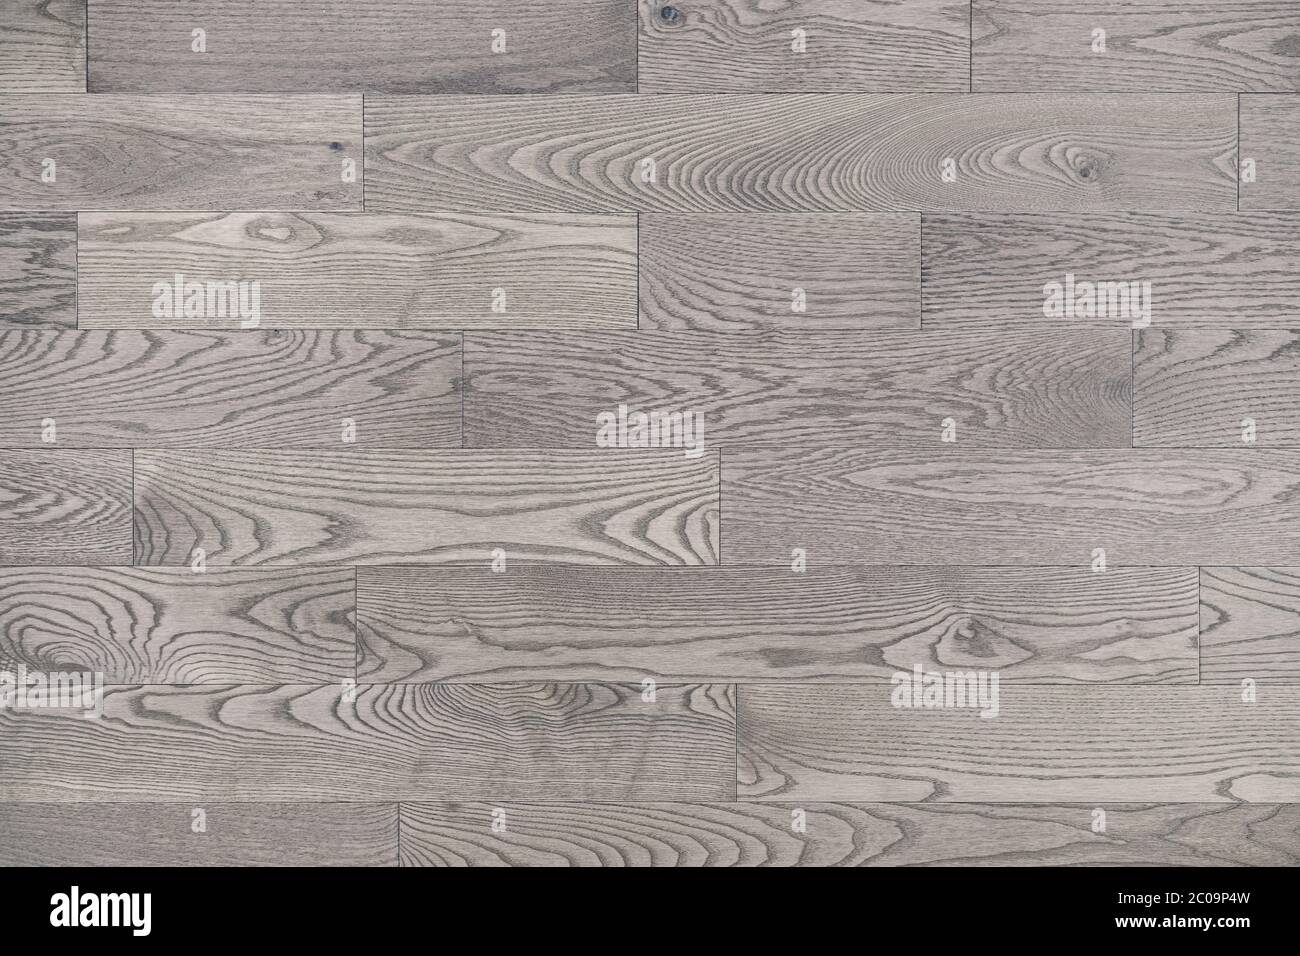 Grau weiß Holz Boden Textur Hintergrund von oben betrachtet. Neutral weiß getünchten Hartholz Fleck gibt diese breite Holzboden Planken ein modernes Aussehen w Stockfoto